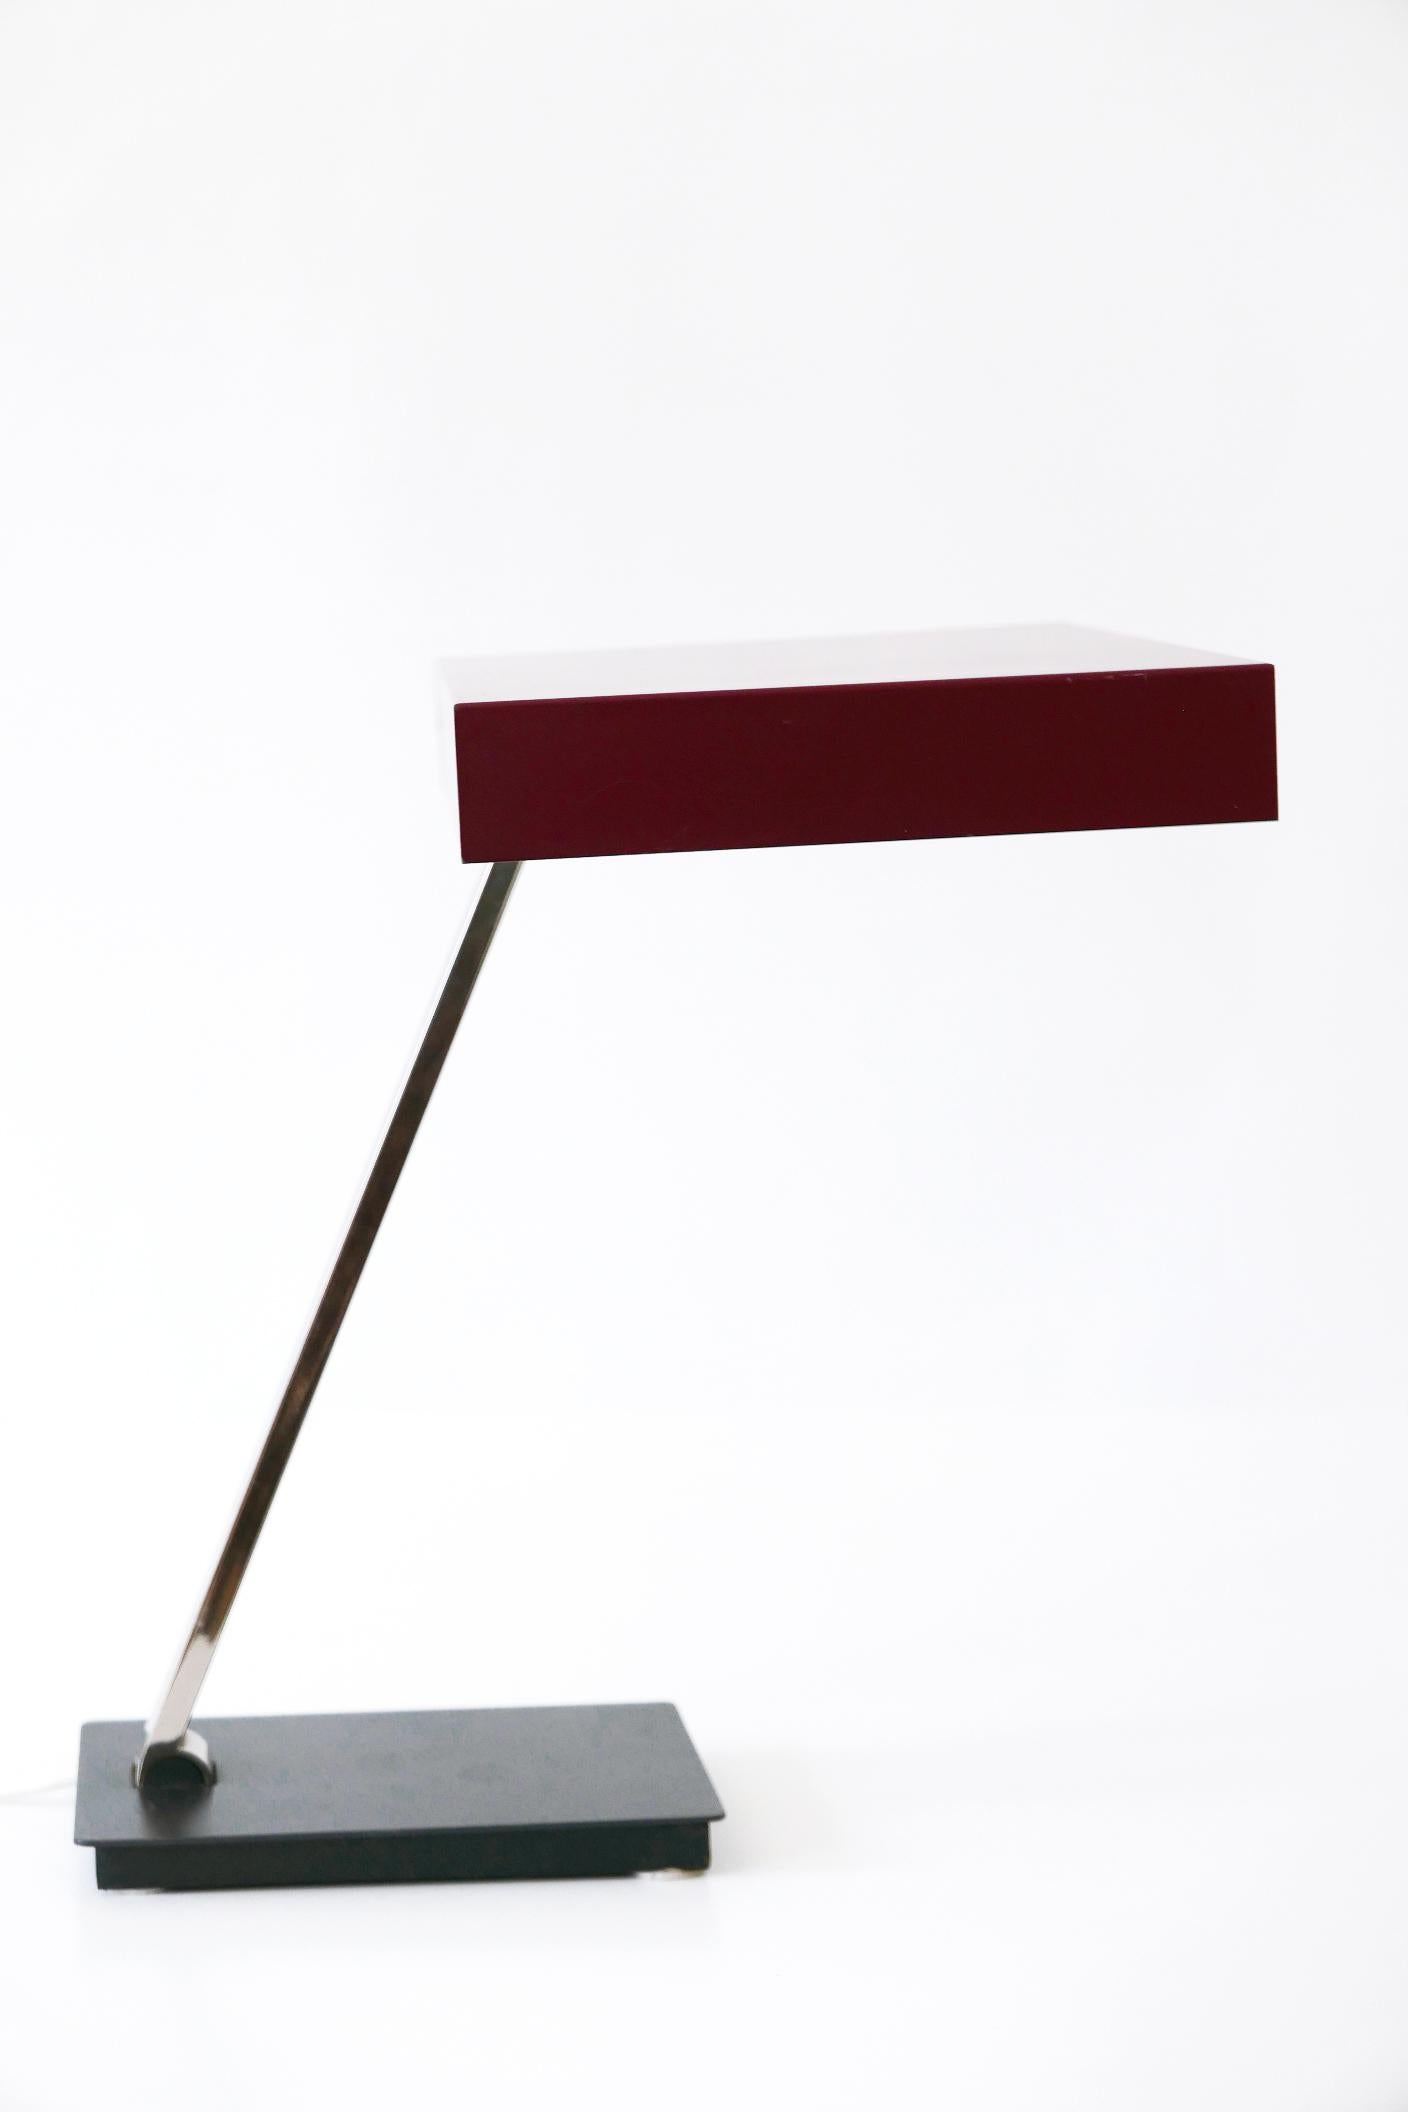 Luxury Mid-Century Modern President Table Lamp by Kaiser Leuchten 1960s Germany For Sale 6